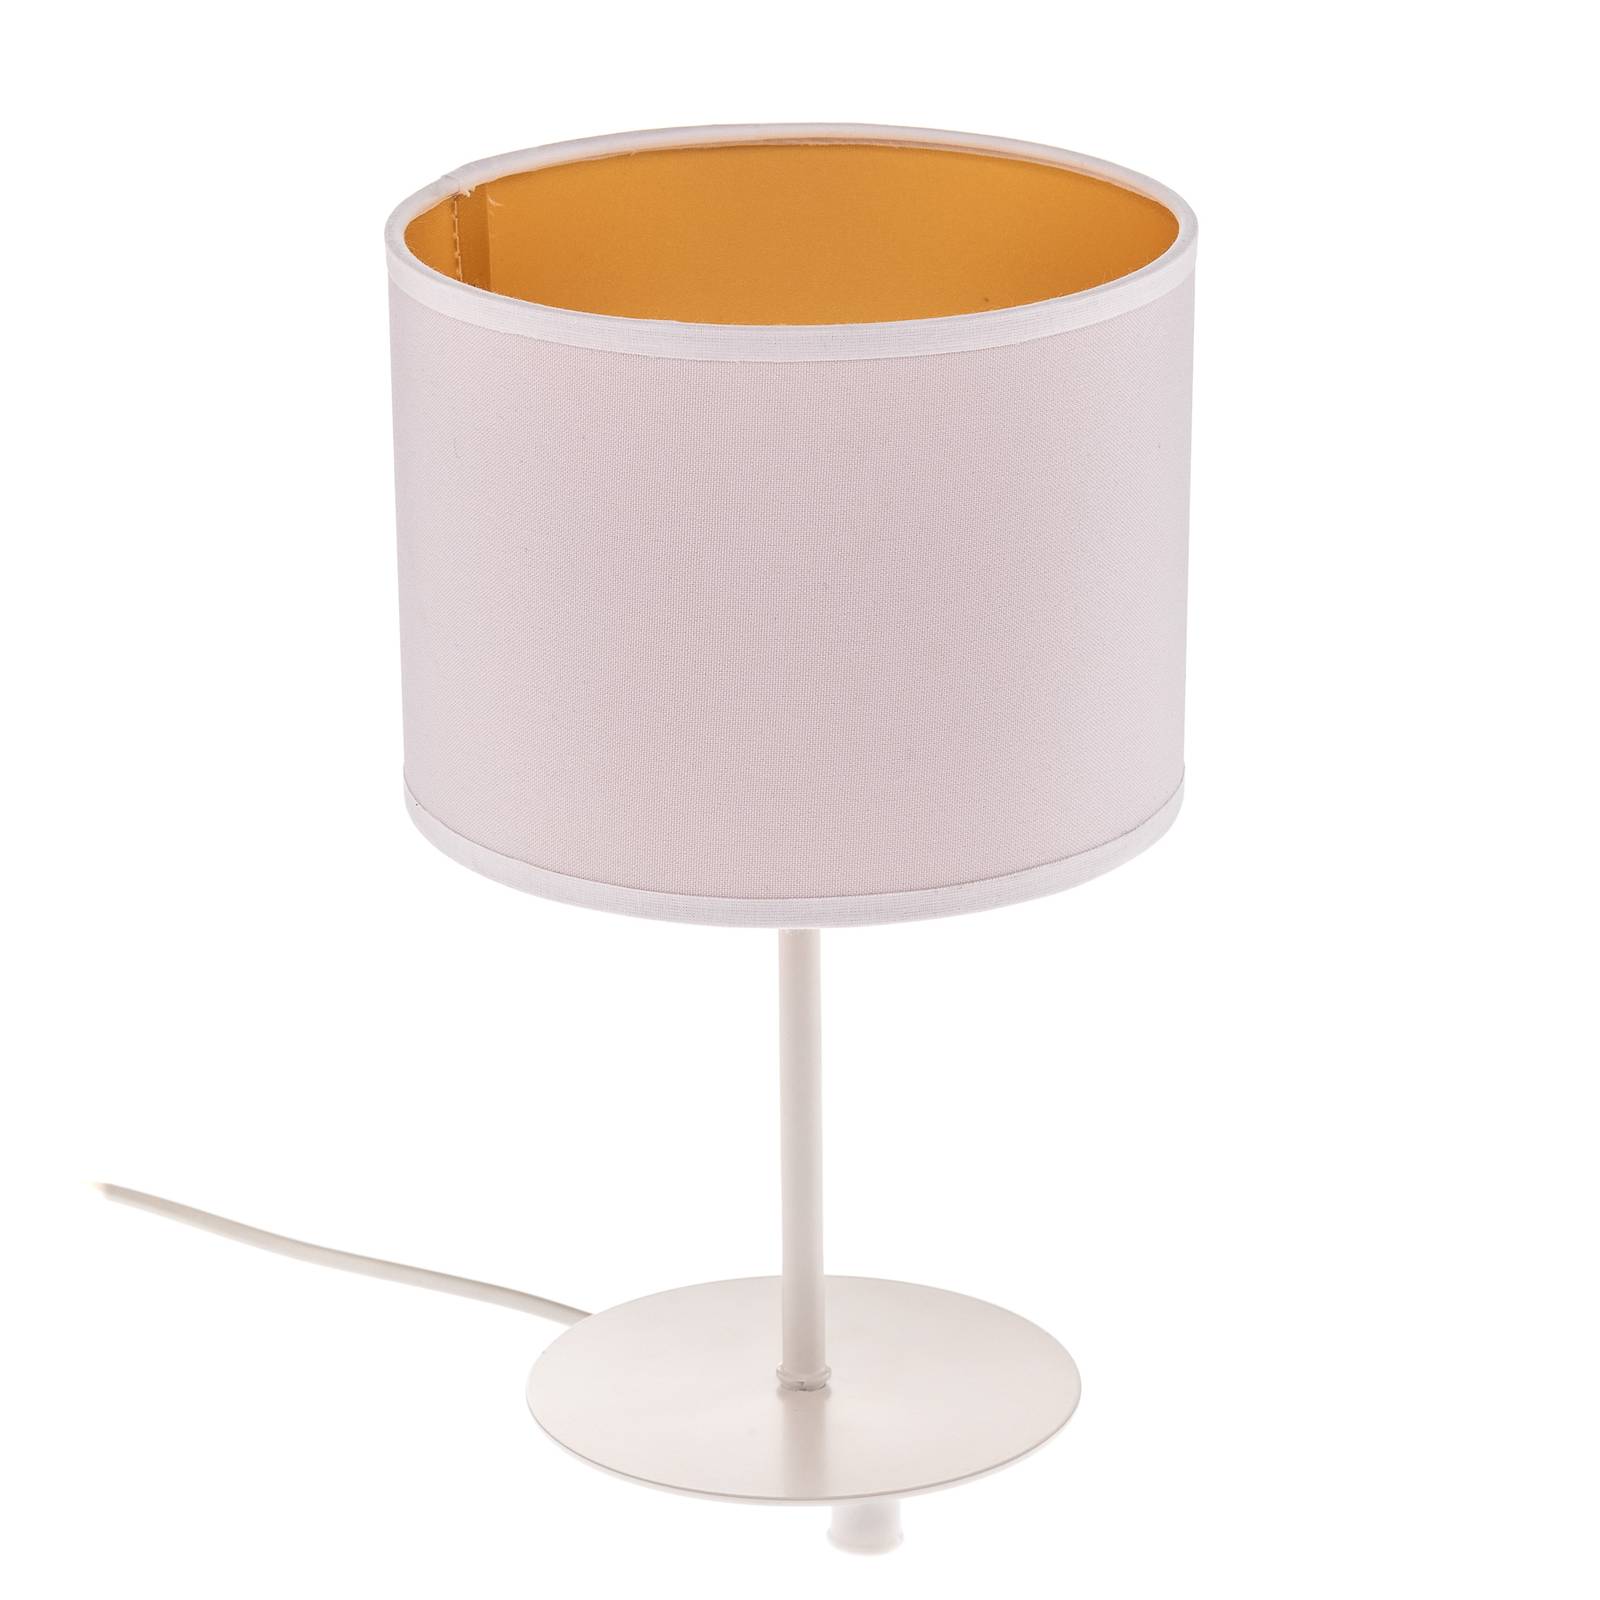 Roller asztali lámpa, fehér/arany, 30 cm magas